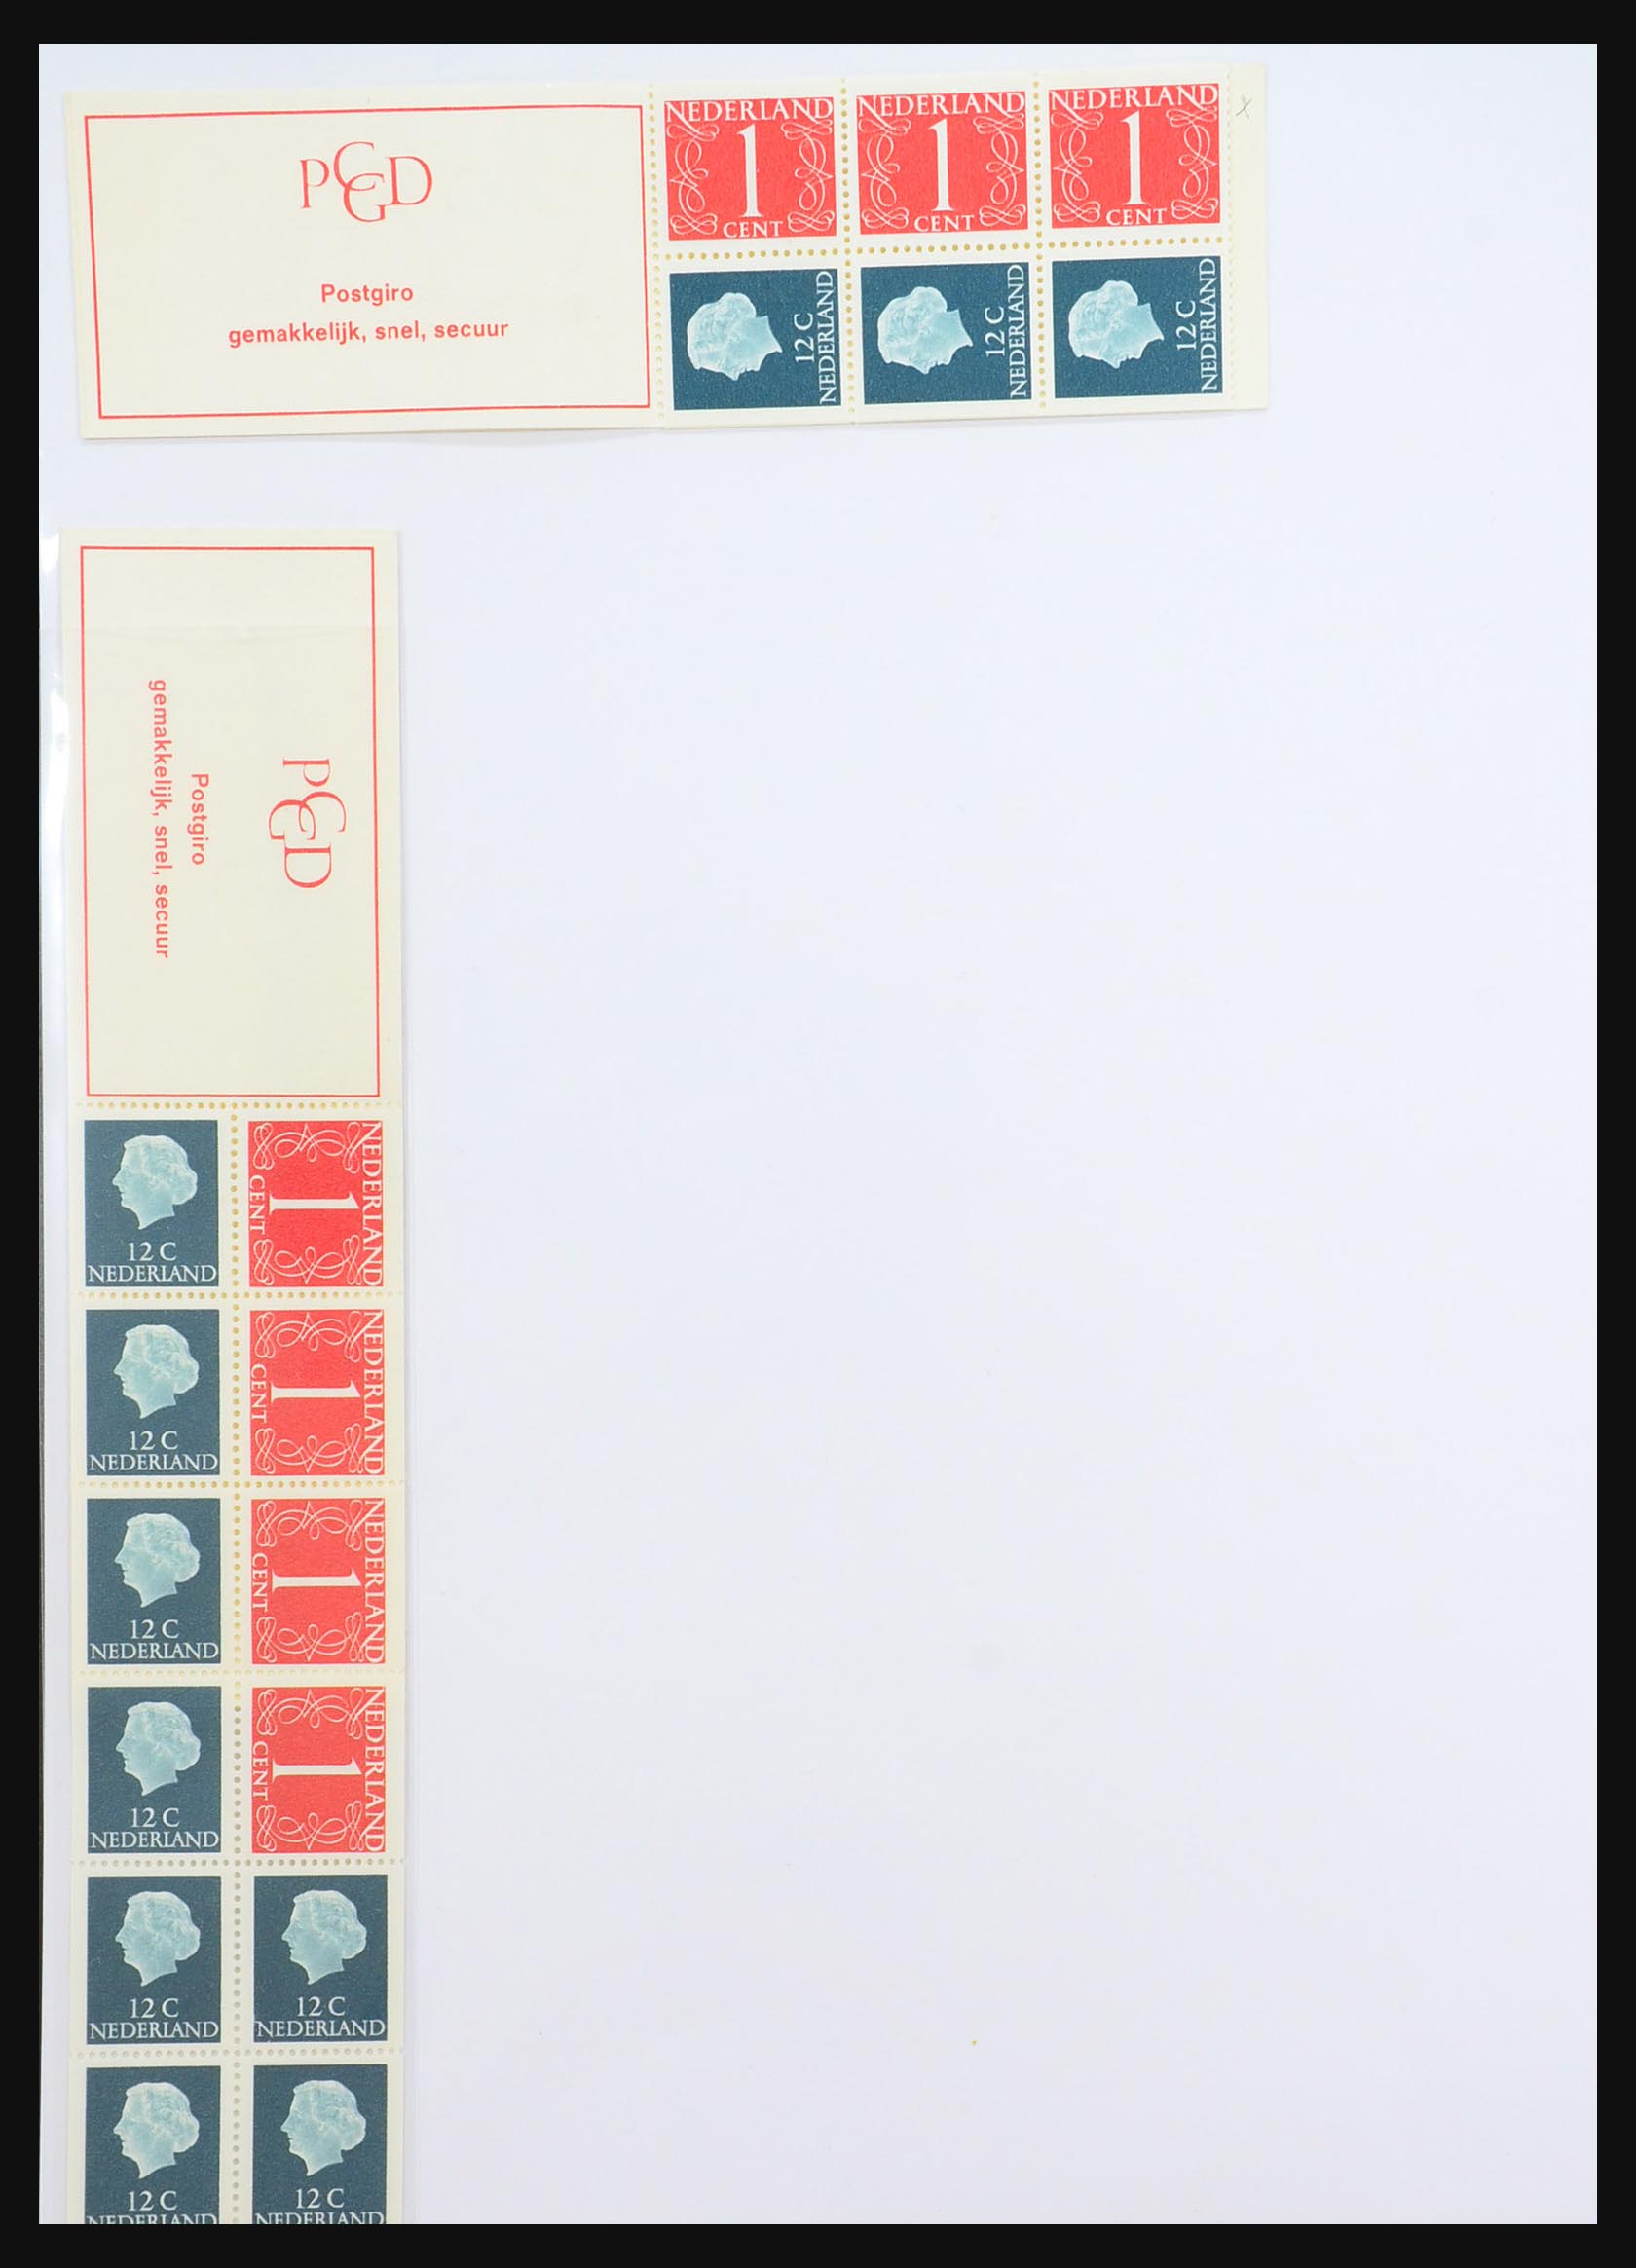 31311 027 - 31311 Netherlands stamp booklets 1964-1994.